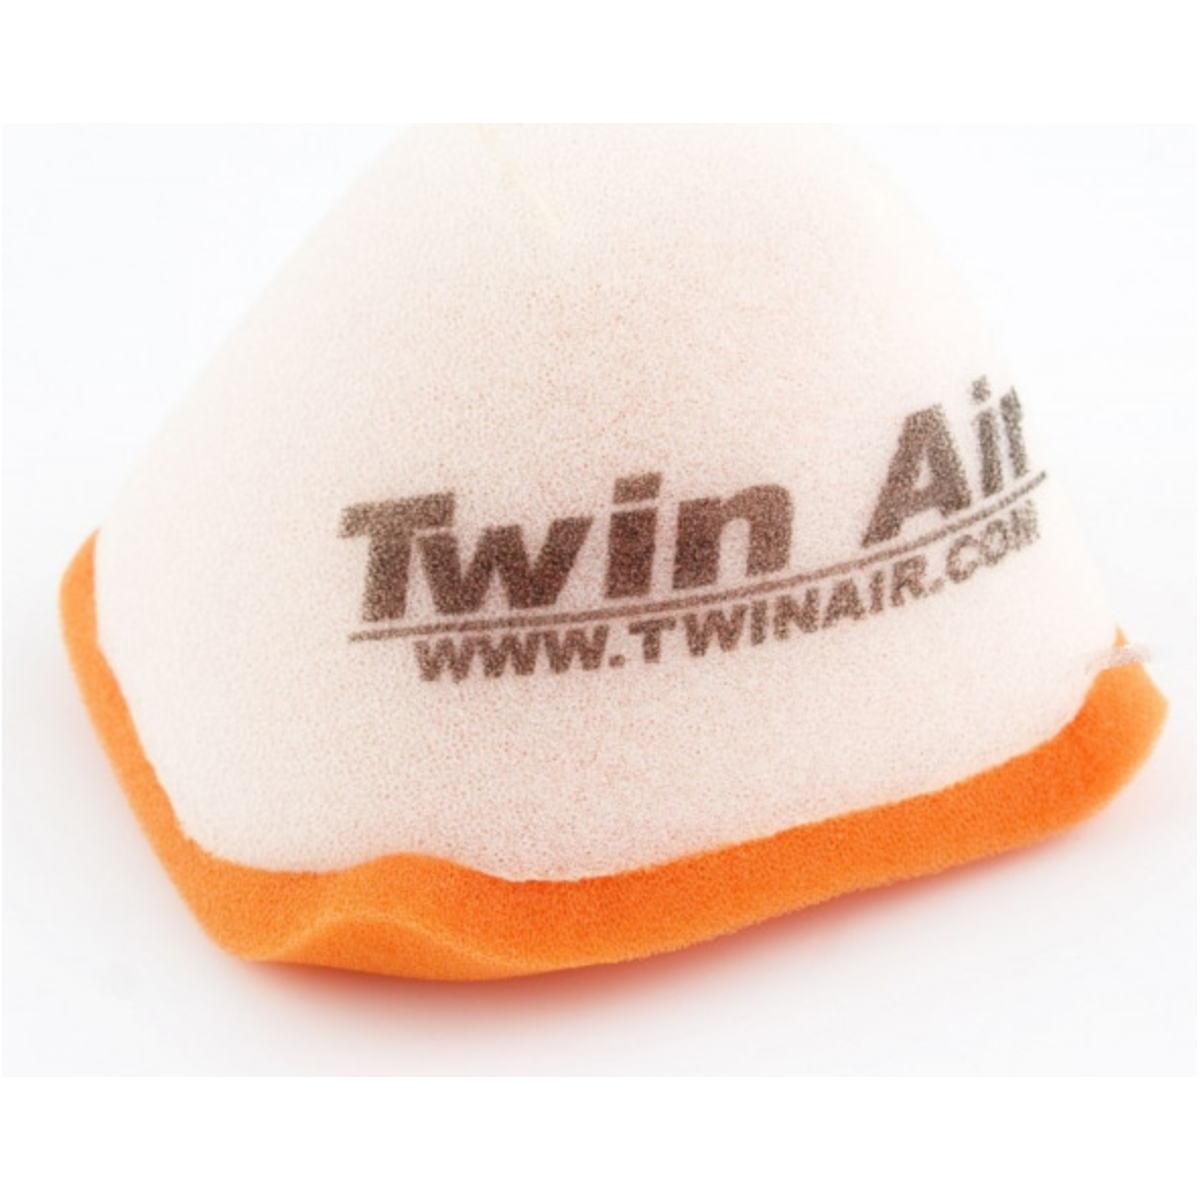 Twin air 152419 luftfilter foam von Twin AIR